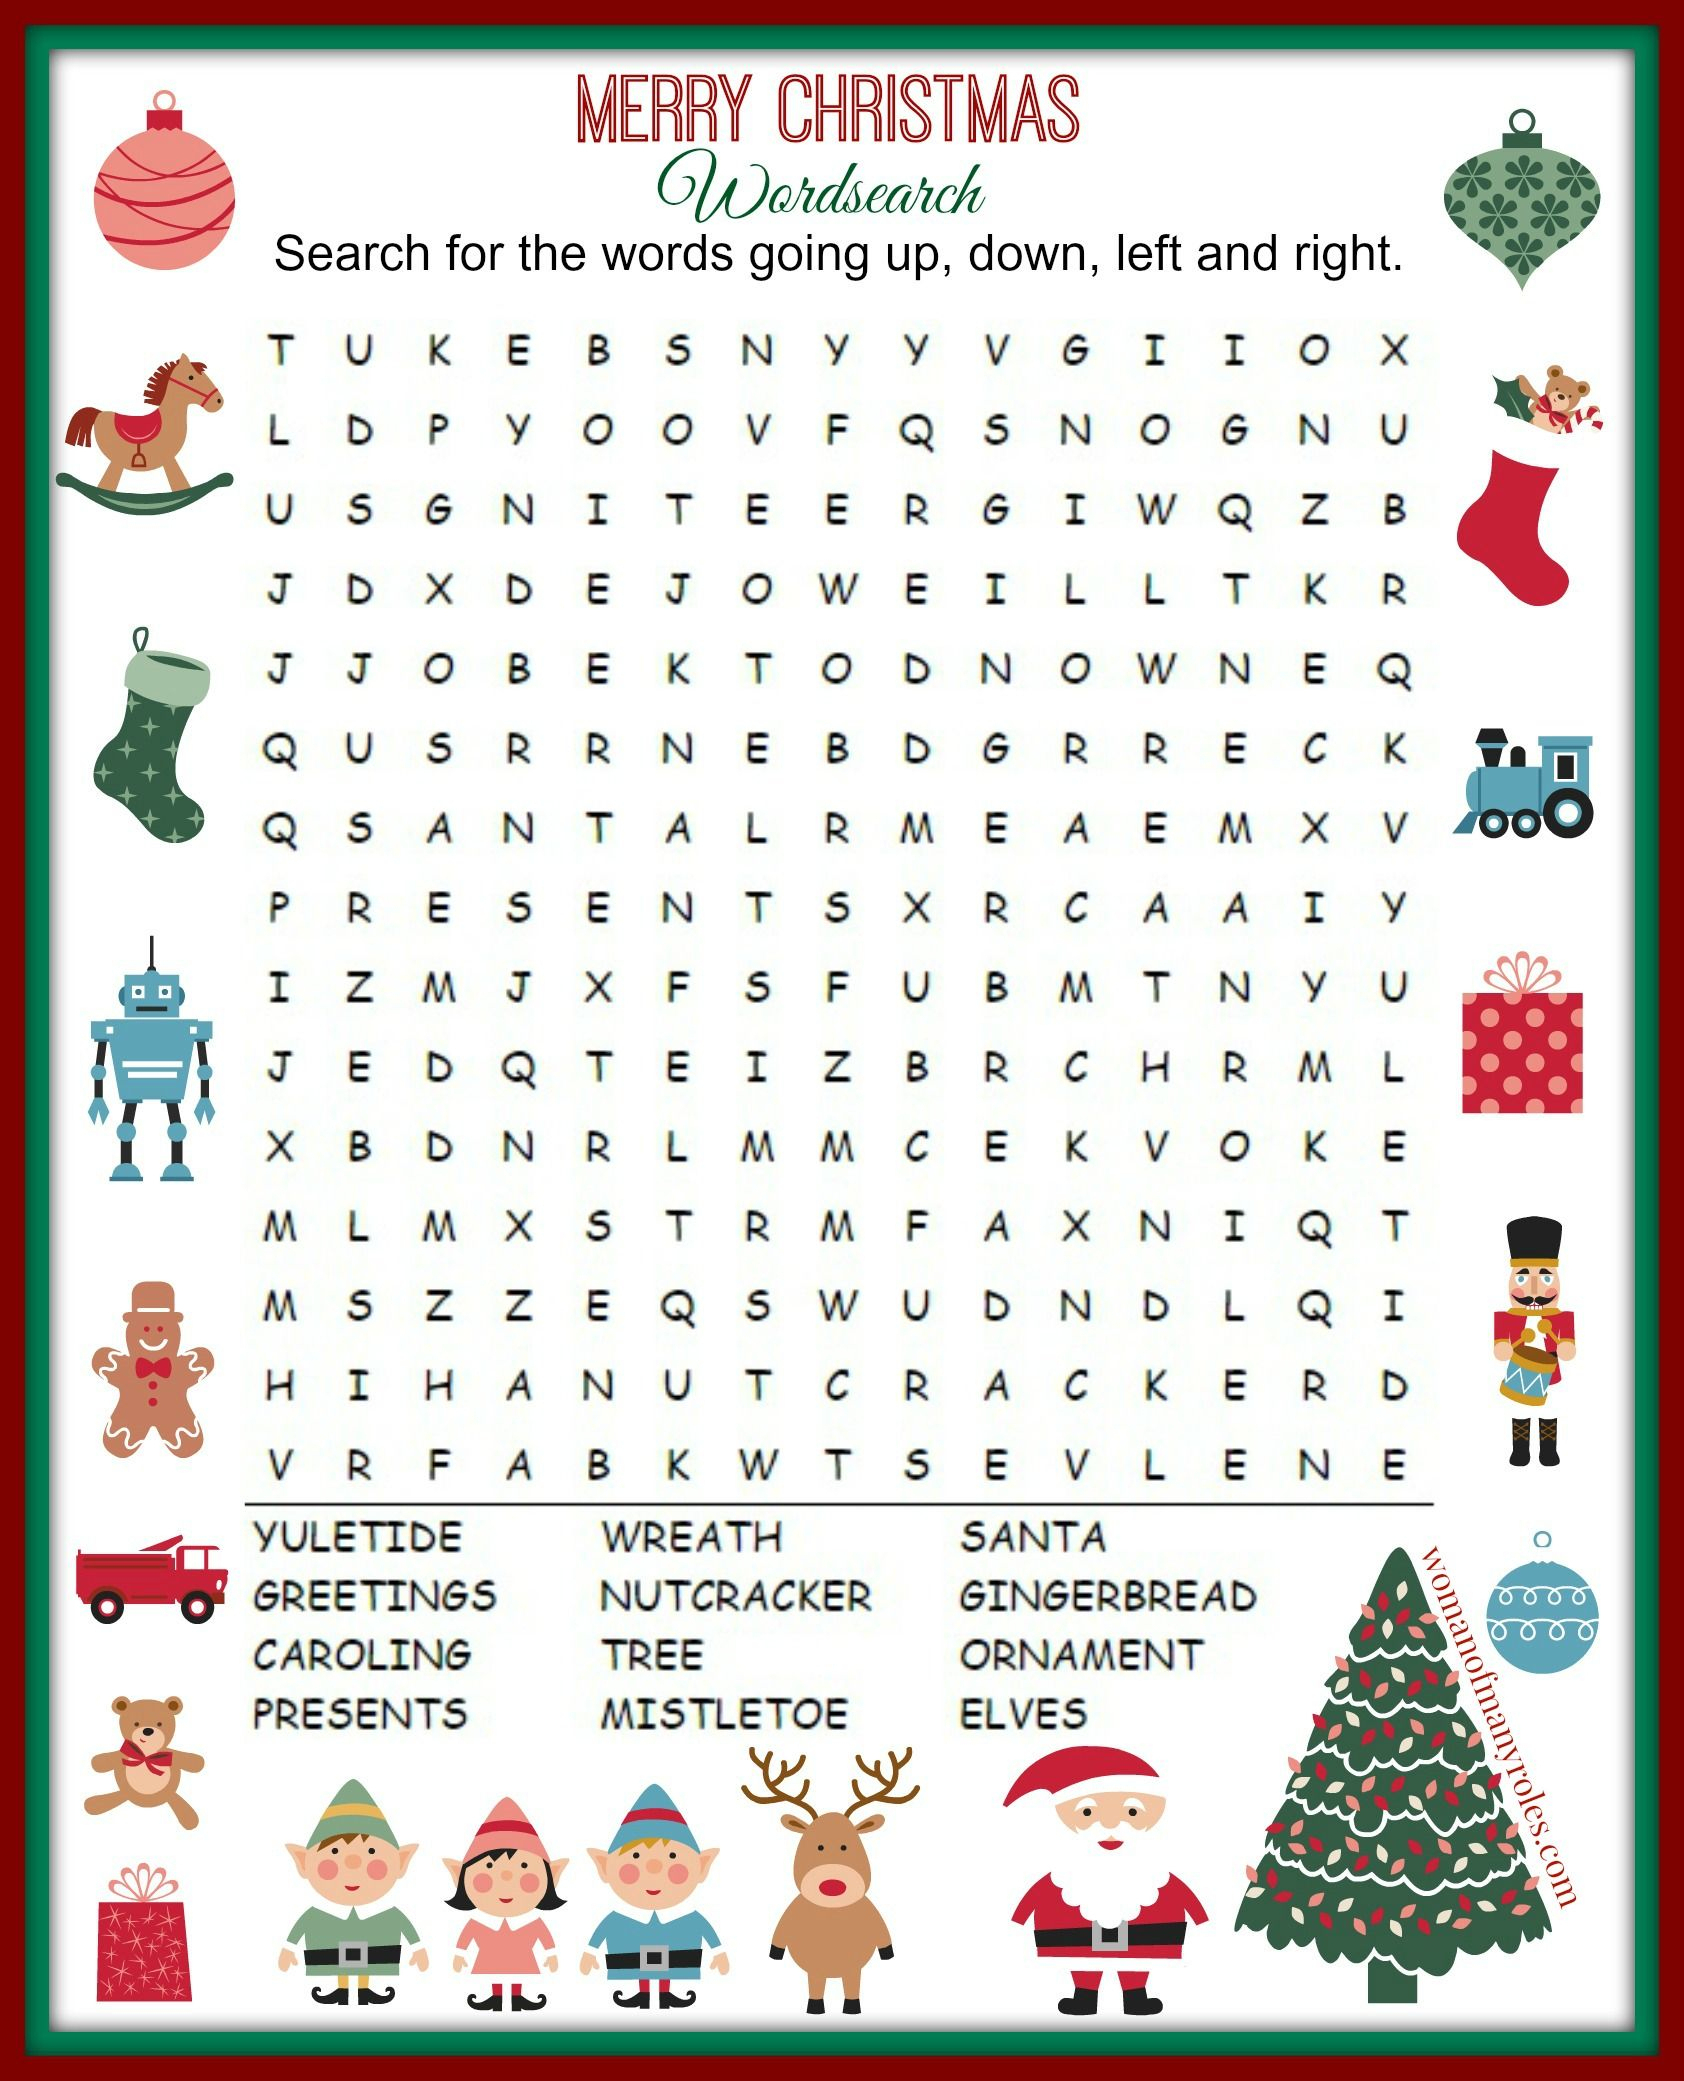 Christmas Word Search Free Printable For Kids Or Adults - Free - Printable Holiday Puzzles For Adults